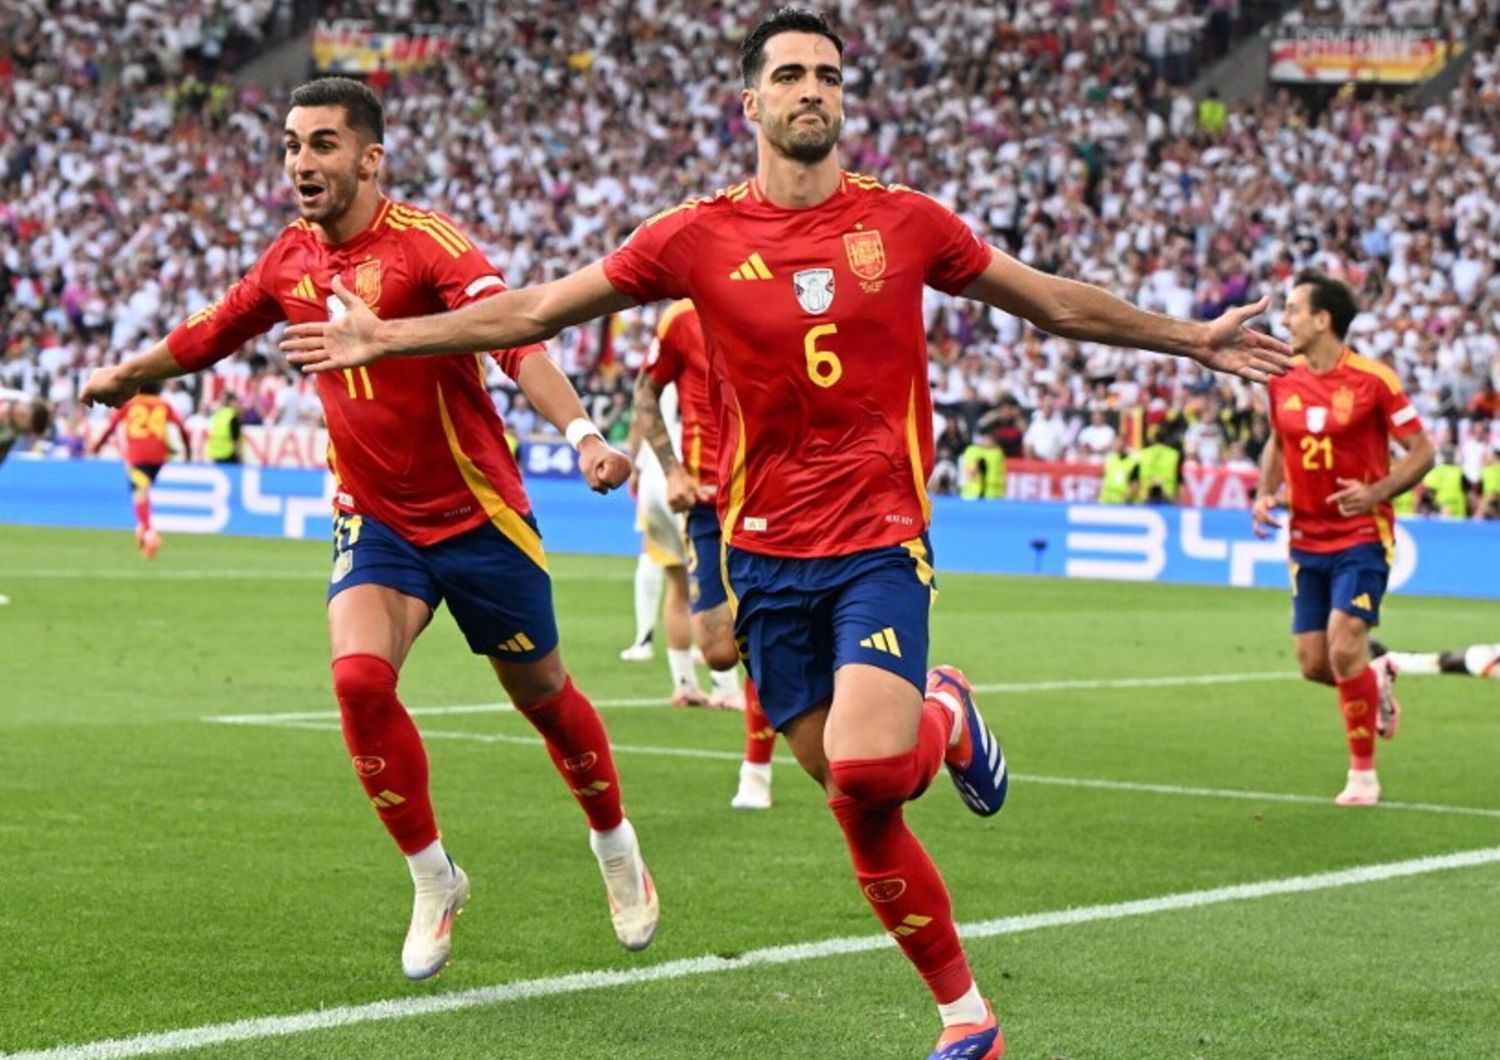 L'esultanza del 2-1 della Spagna sulla Germania di Mikel Merino